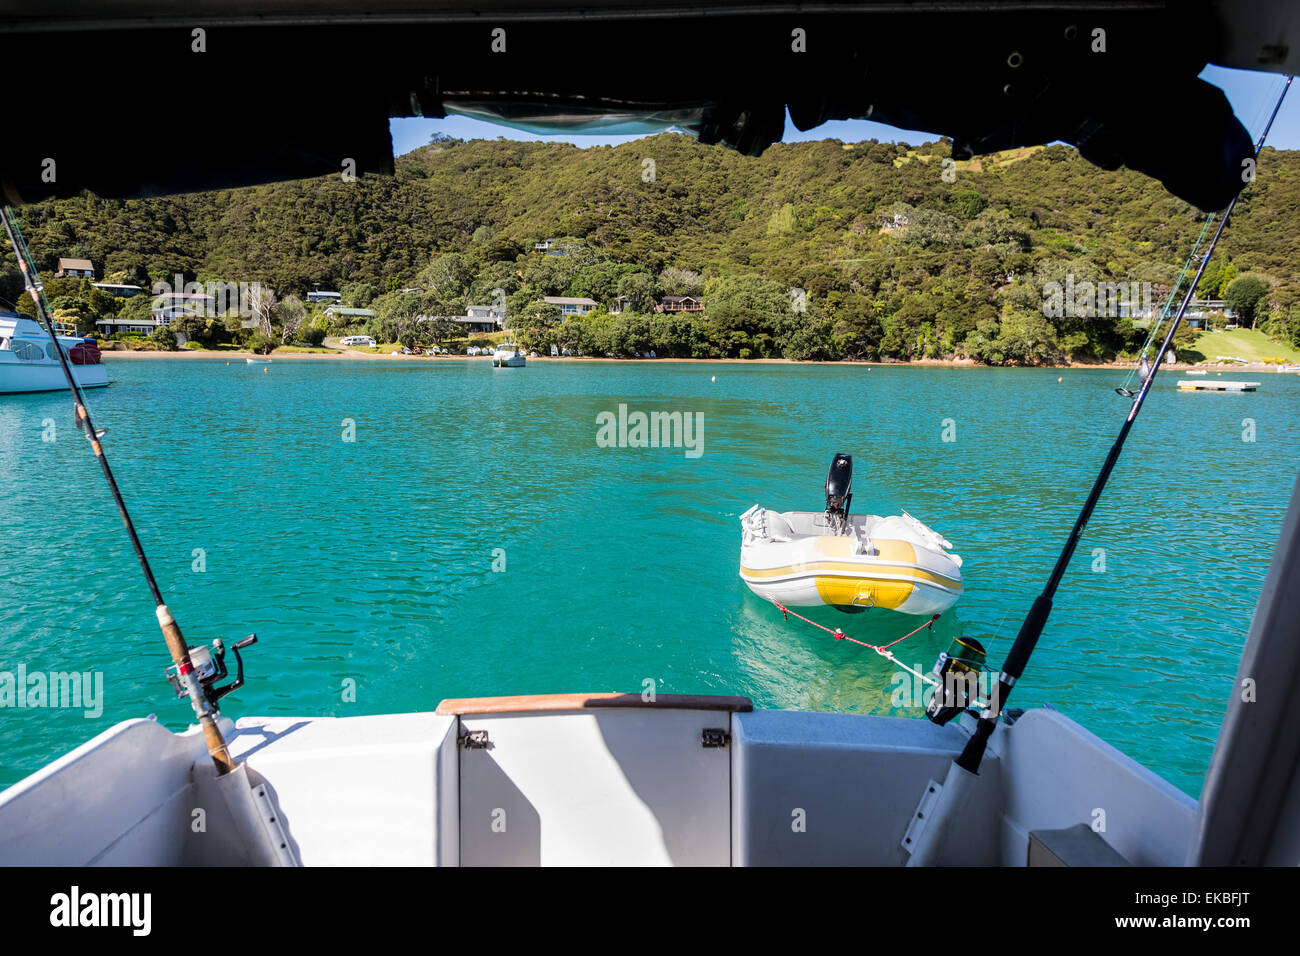 Vista dal retro di una barca come teste fuori in mare nella baia delle isole, Nuova Zelanda. Foto Stock